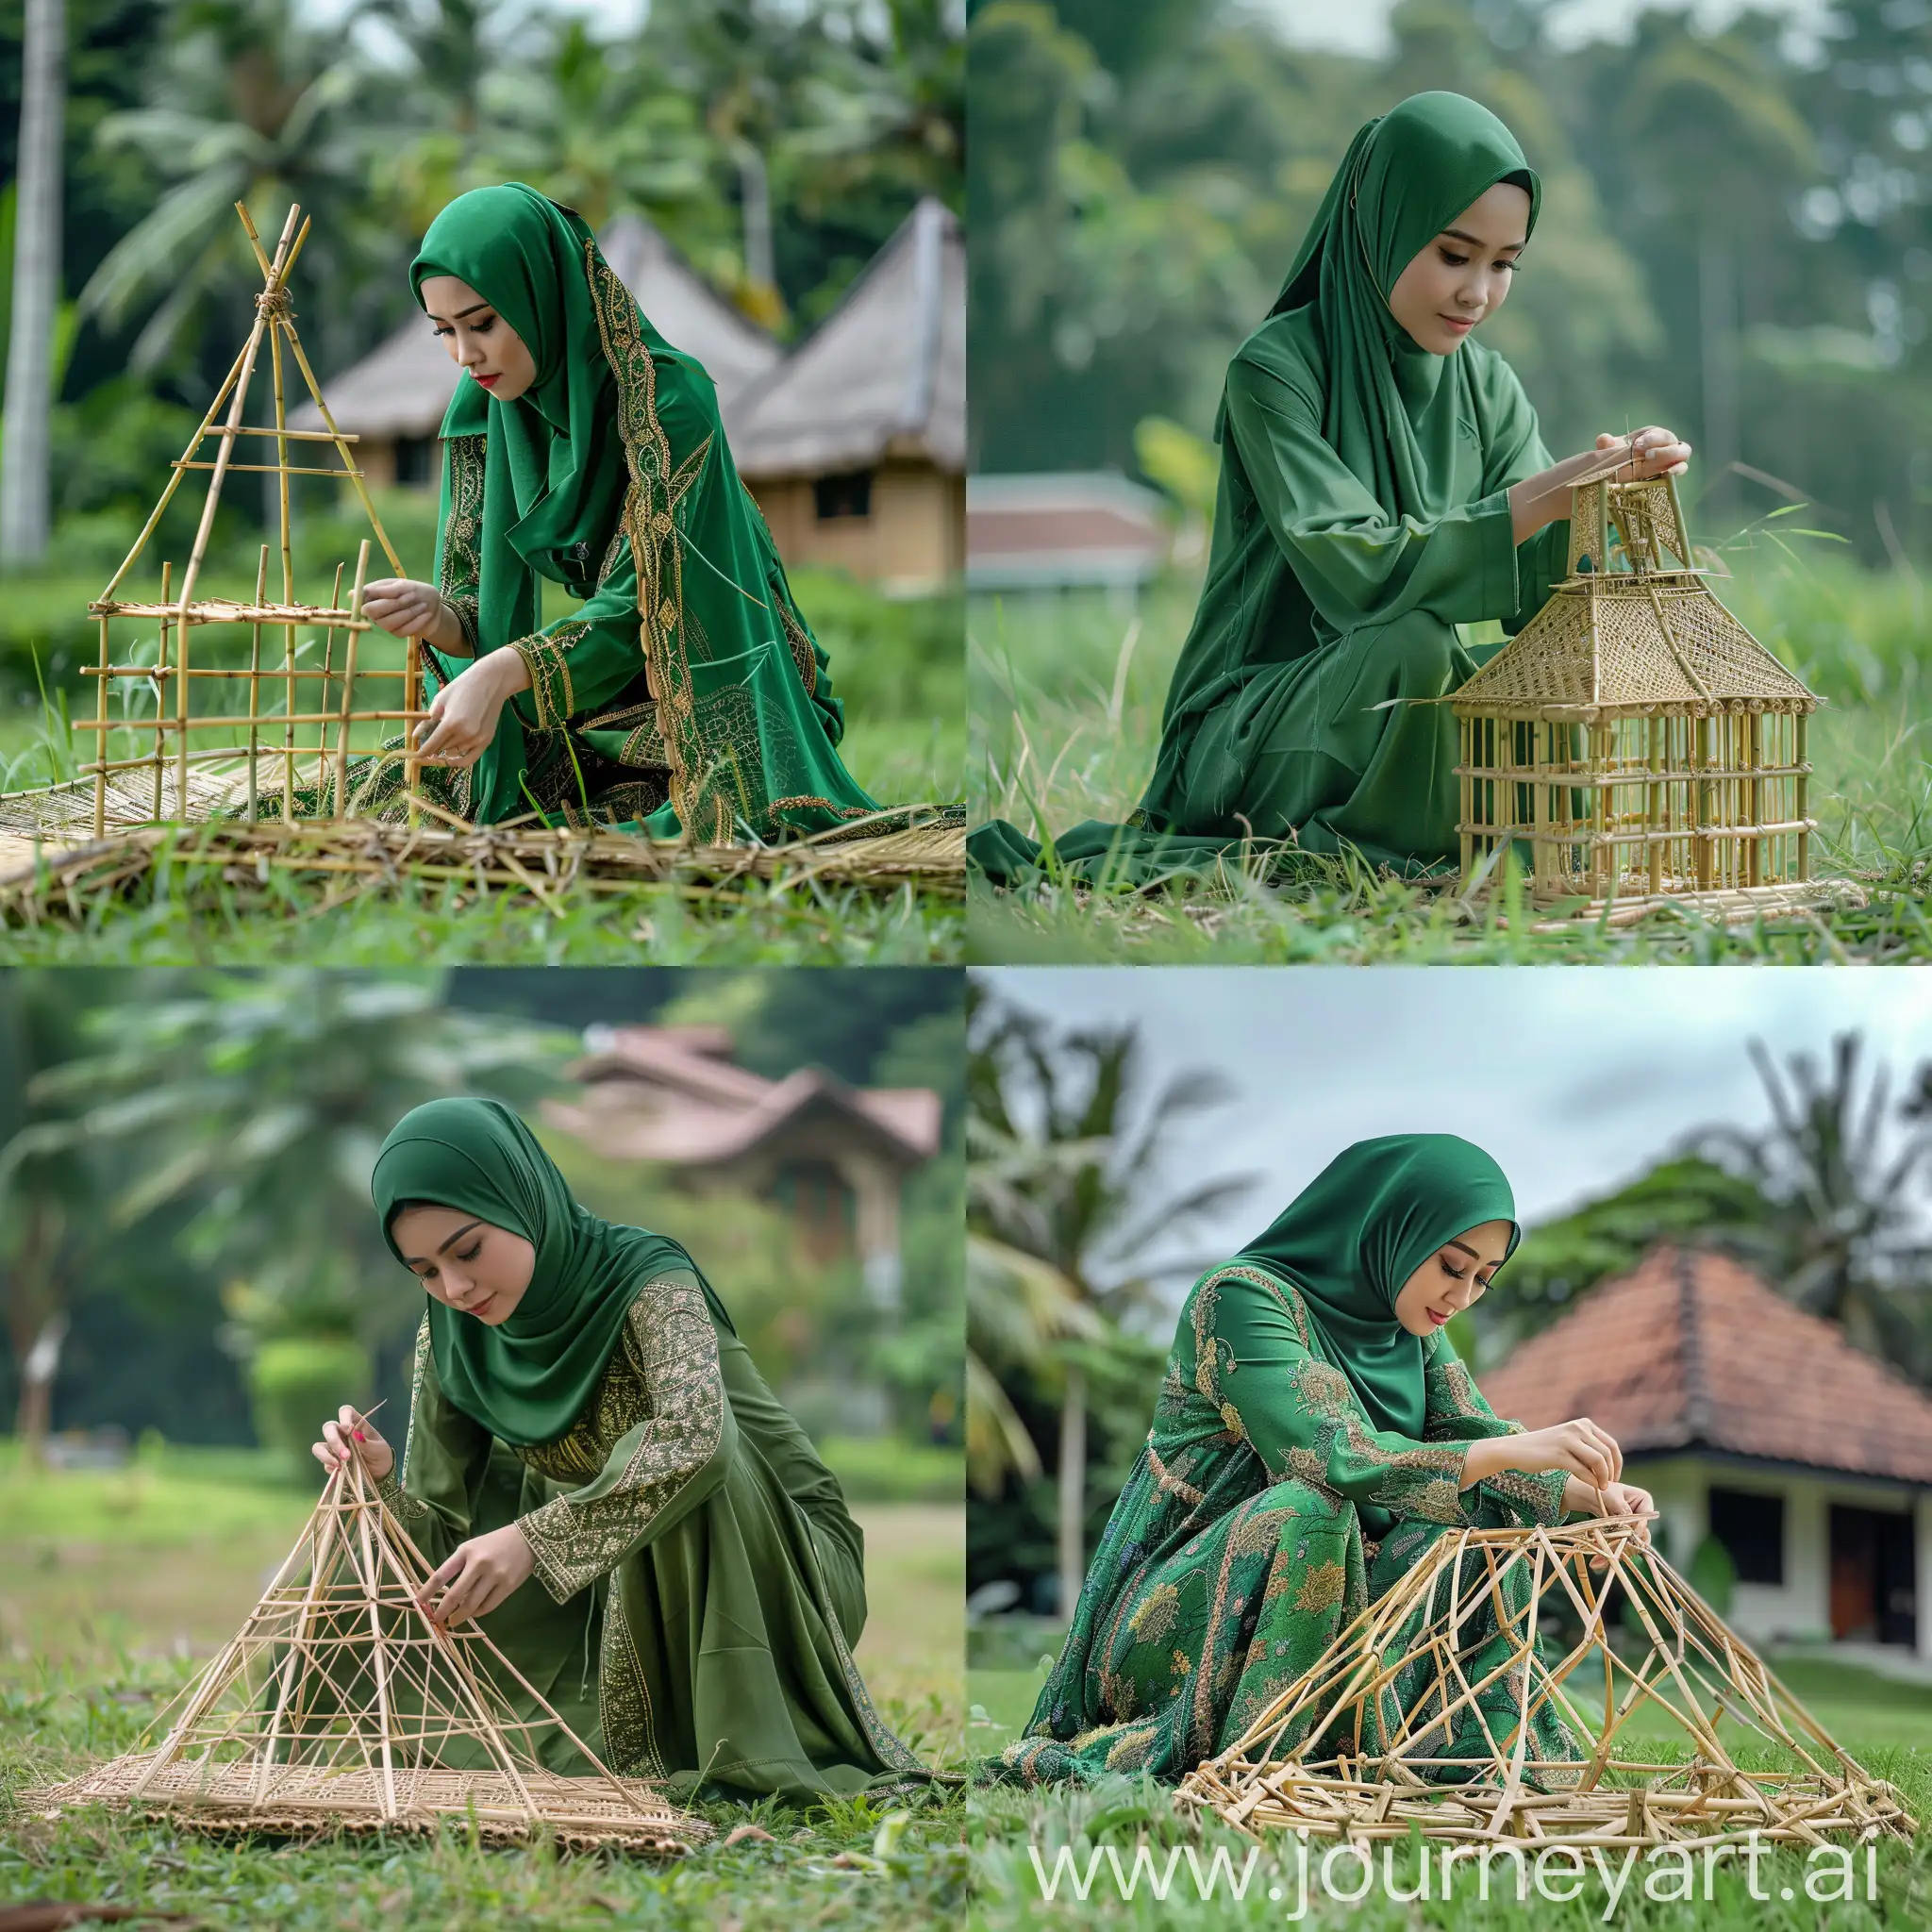 seorang wanita hijab cantik memakai baju desa panjang hijau tua, dan celana panjang. wanita itu sedang membuat miniatur rumah bambu besar seperti rumah asli besarnya diatas rumput hijau.wide angle. ada pemandangan indah.